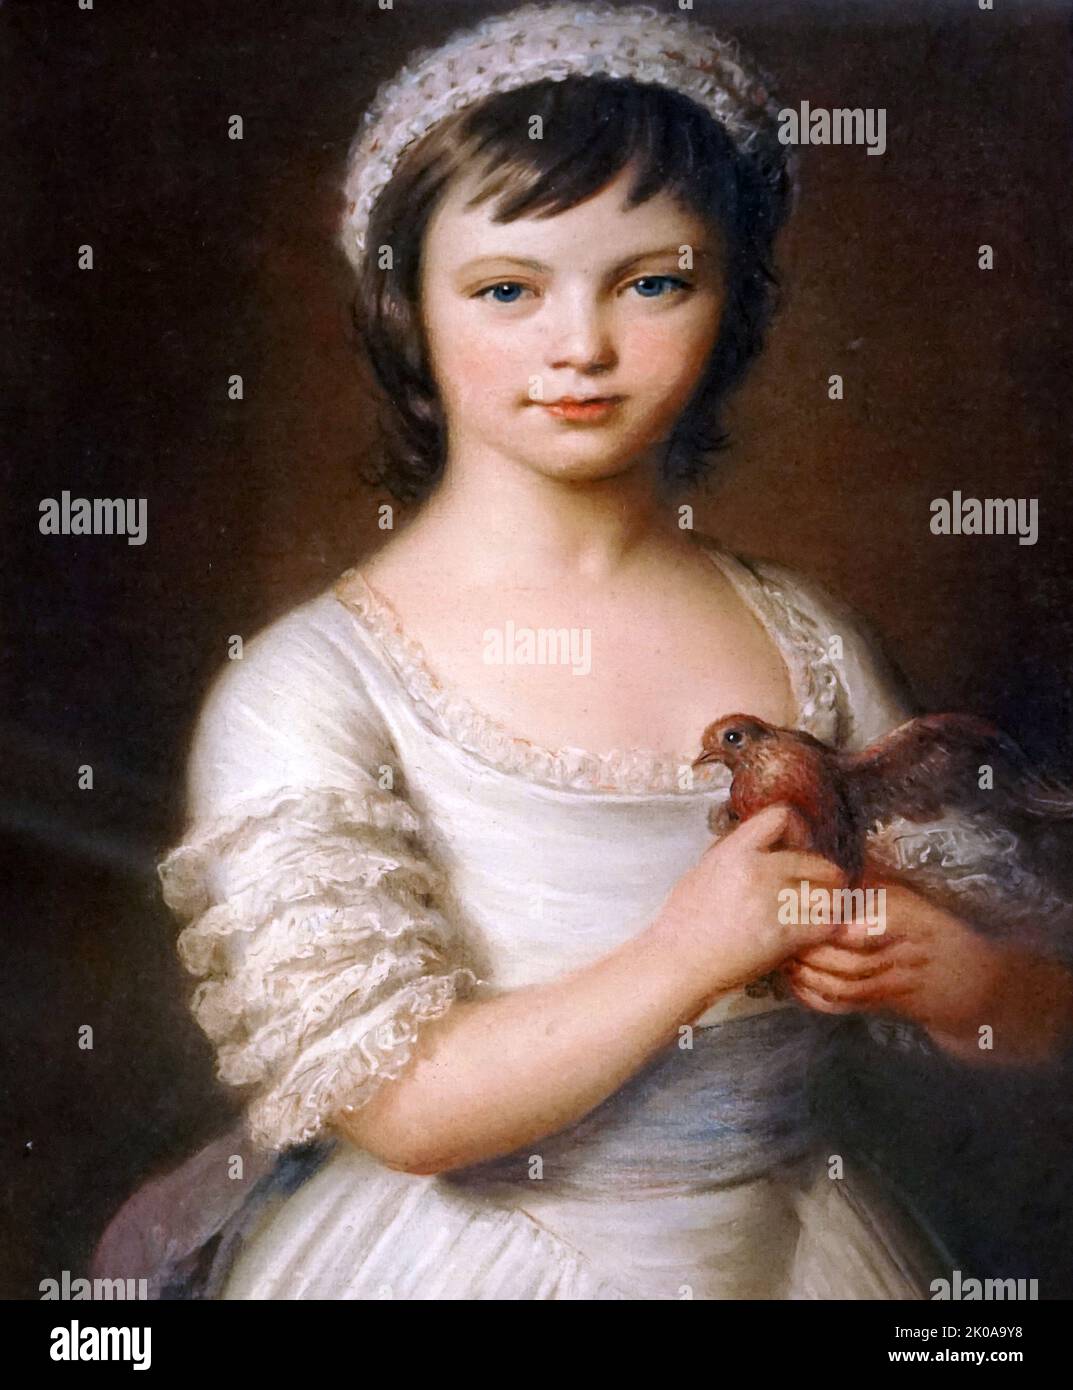 Sophia Dumergue, gemalt von Johann Zoffany. Sophia Dumergue (1768-1831) wurde in Frankreich geboren, kam aber nach London, als sie mit ihrem Vater Charles zwei oder drei Jahre alt war. Sophia heiratete nie und hielt ihr Haus für ihren Vater, als sie aufwuchs. Johan Joseph Zoffany, RA (geb. Johannes Josephus Zaufallij; 13. März 1733 - 11. November 1810) war ein deutscher neoklassizistischer Maler, der vor allem in England, Italien und Indien tätig war Stockfoto